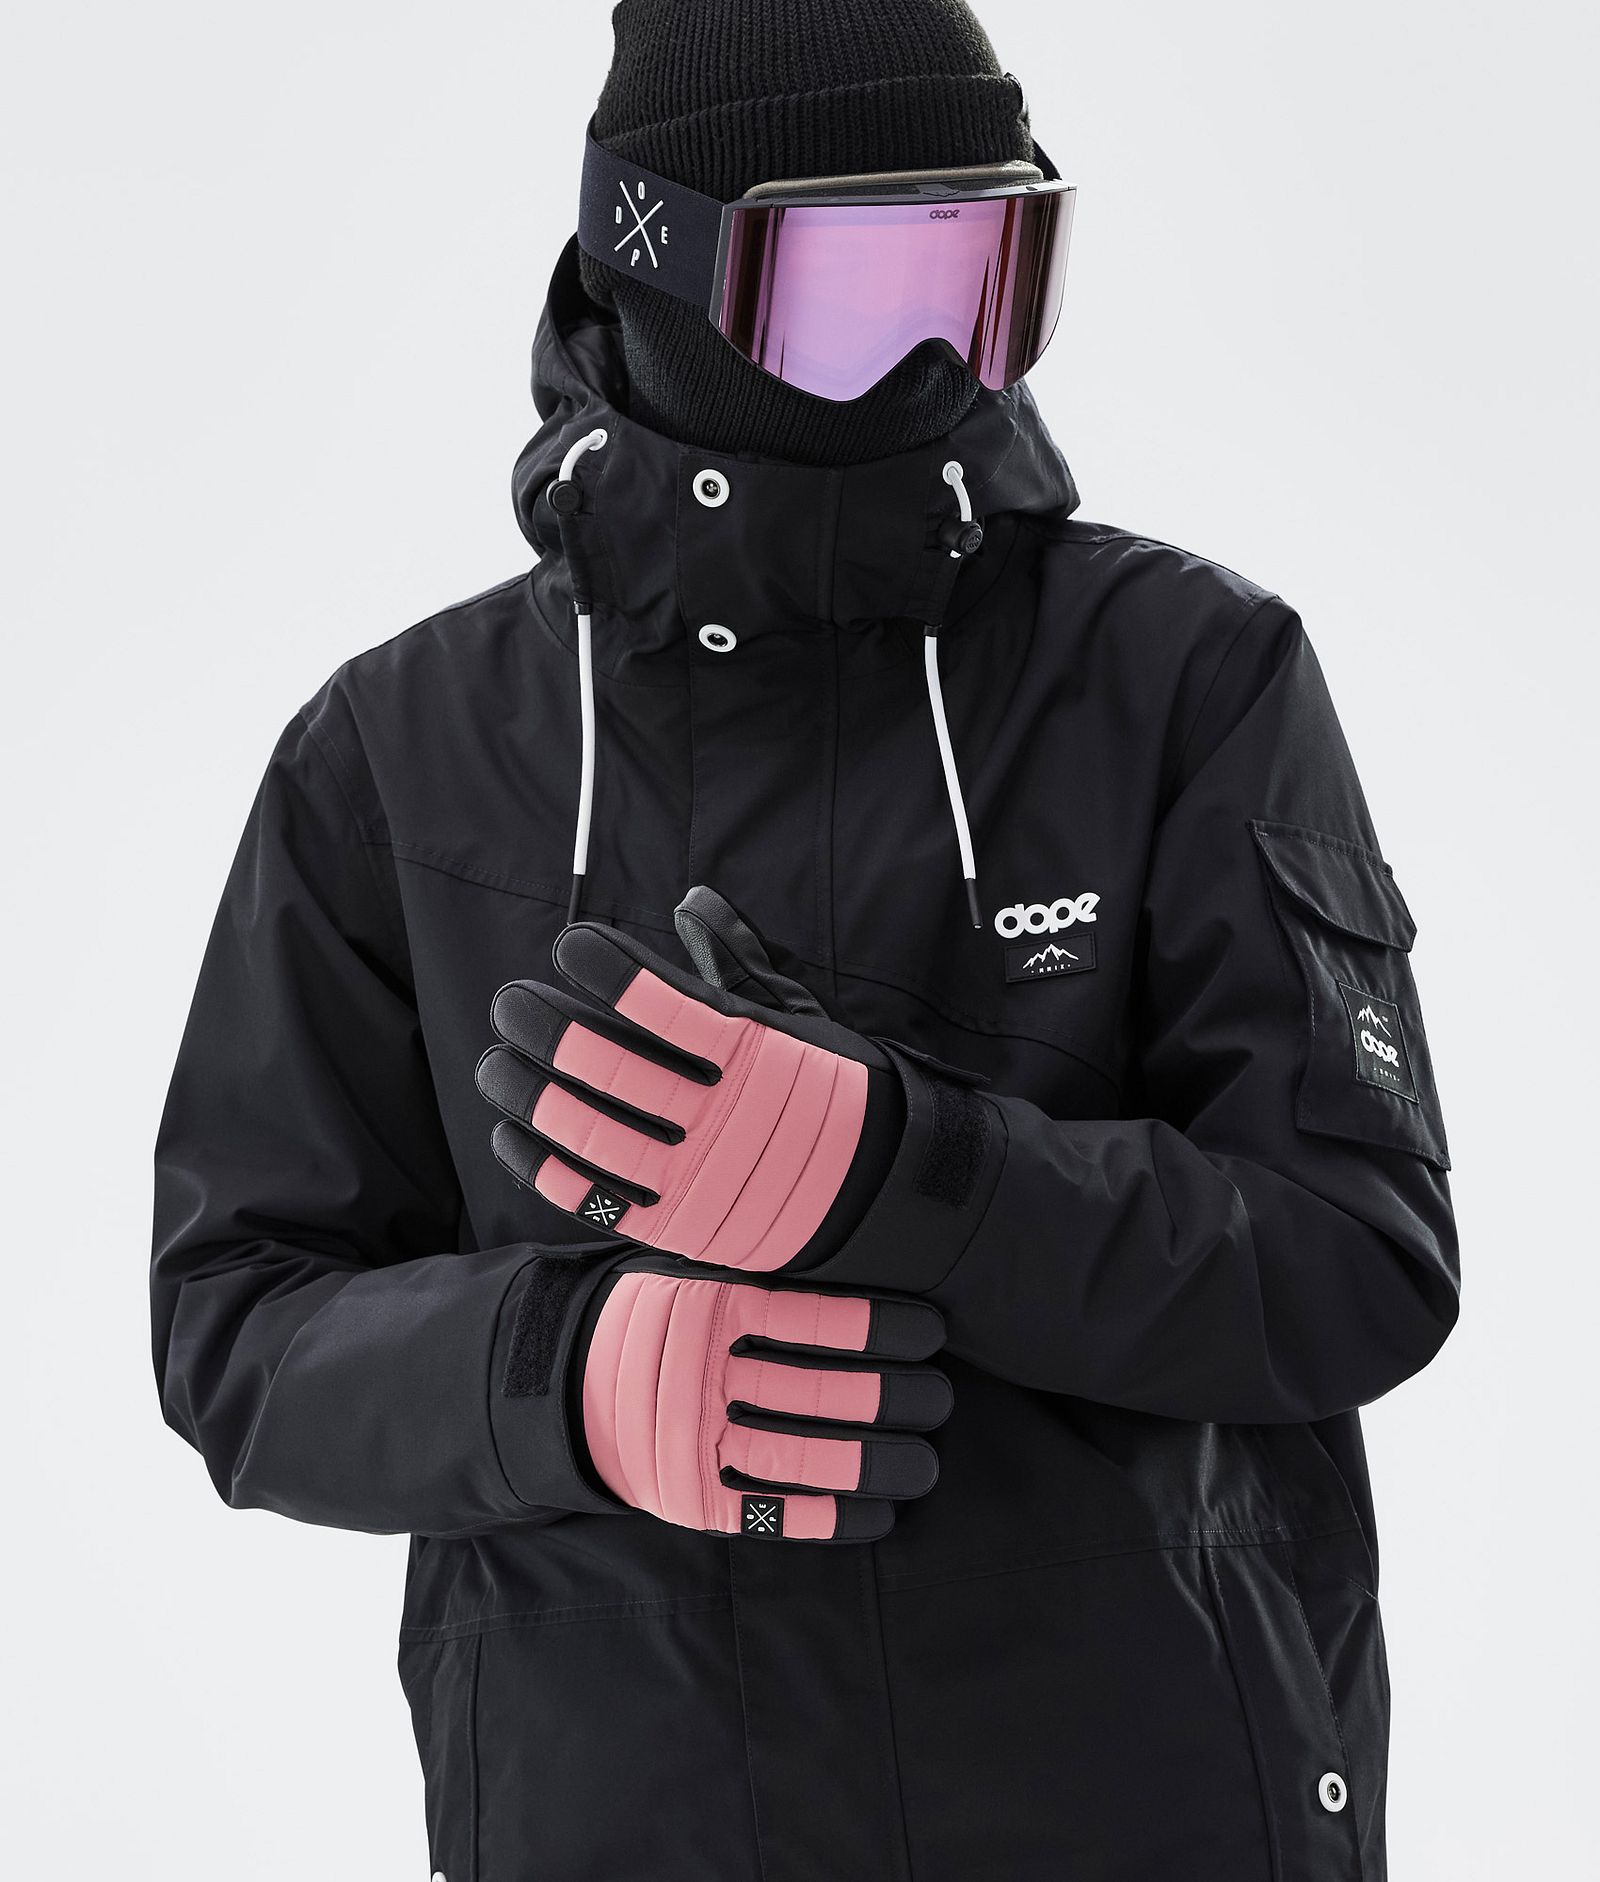 Ace 2022 スキーグローブ Pink